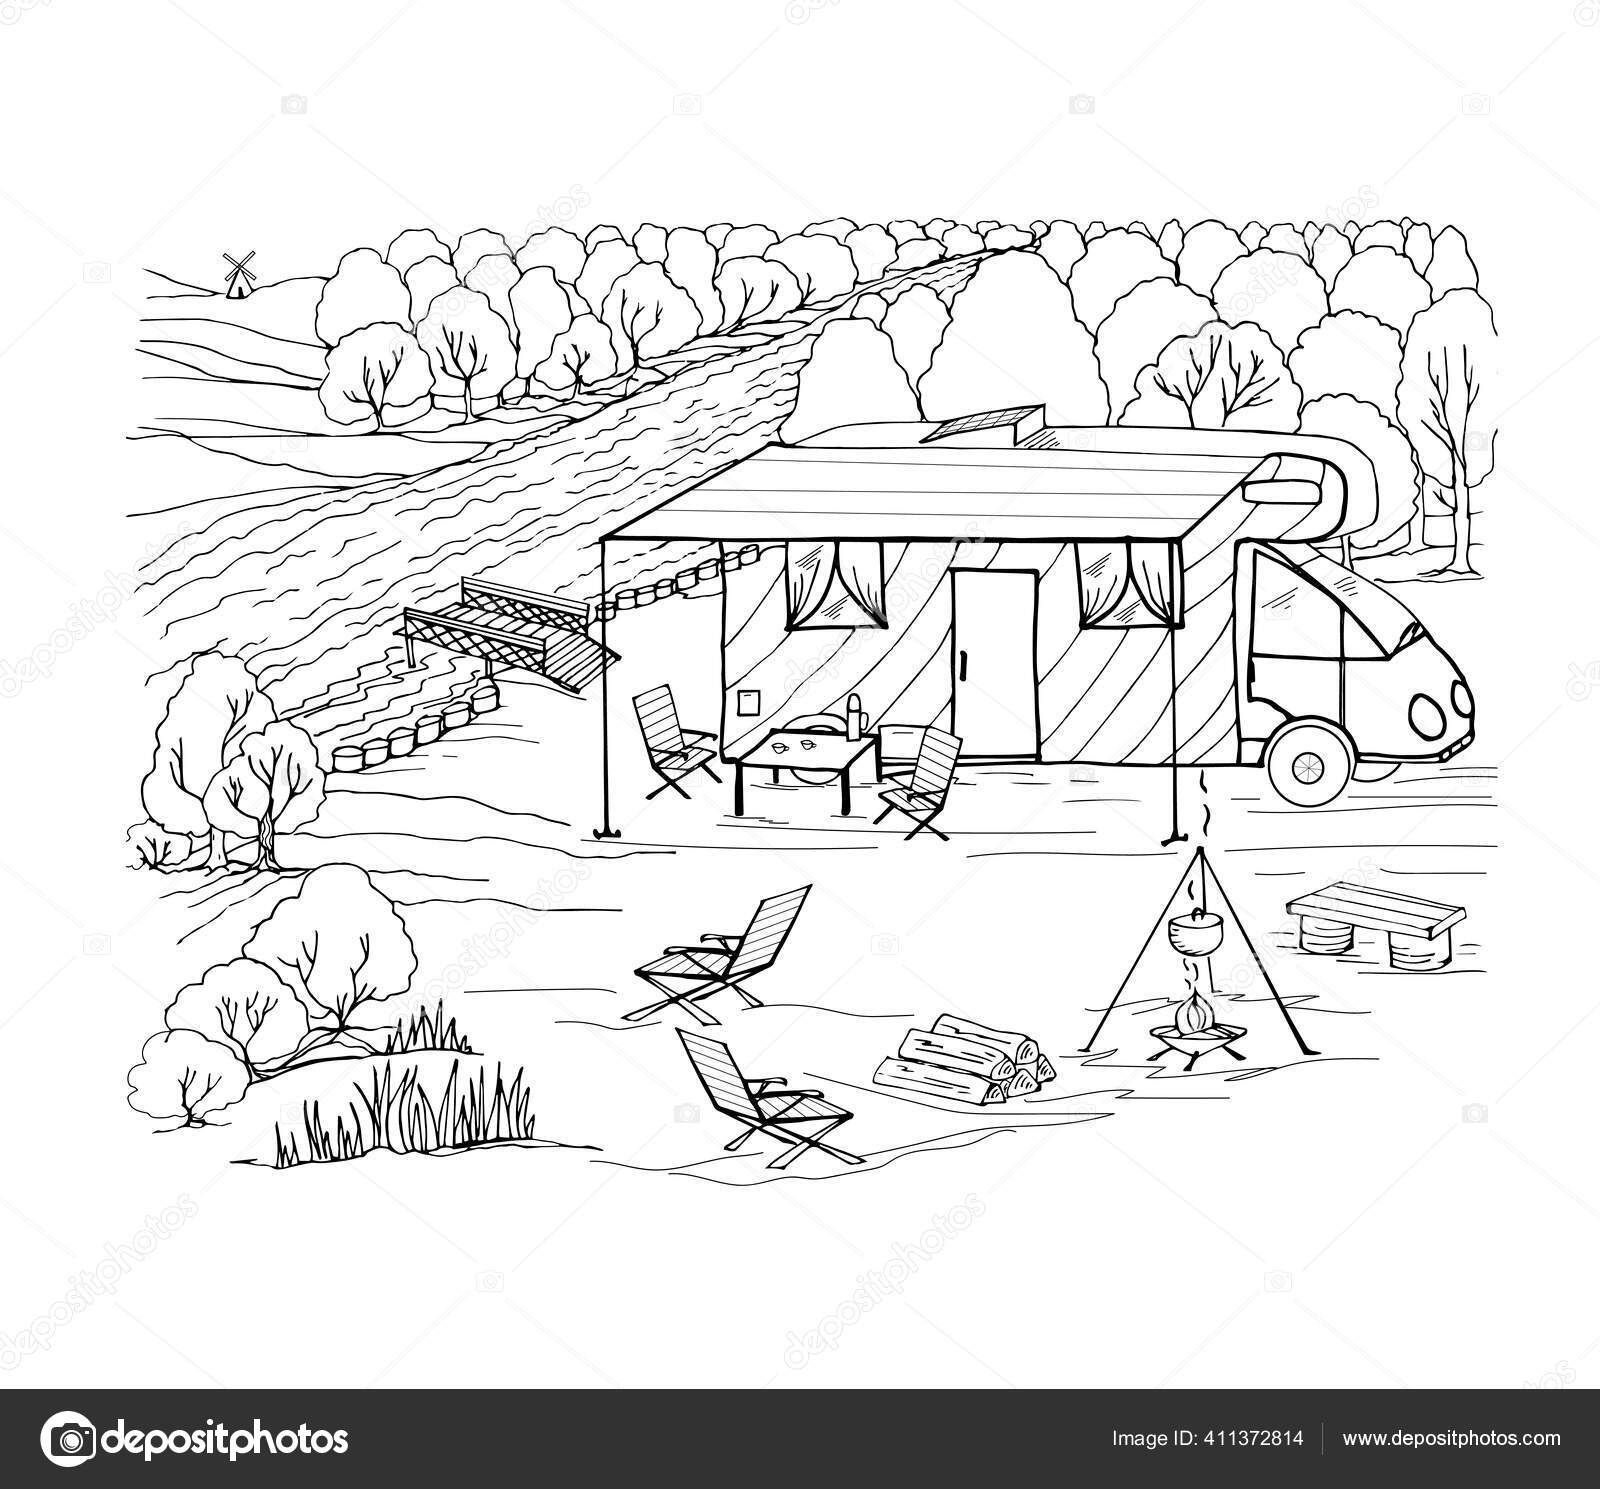 Libro para colorear camping con una autocaravana panel solar fogata cocina de verano bosque leãa vector de stock por mariabelyakova